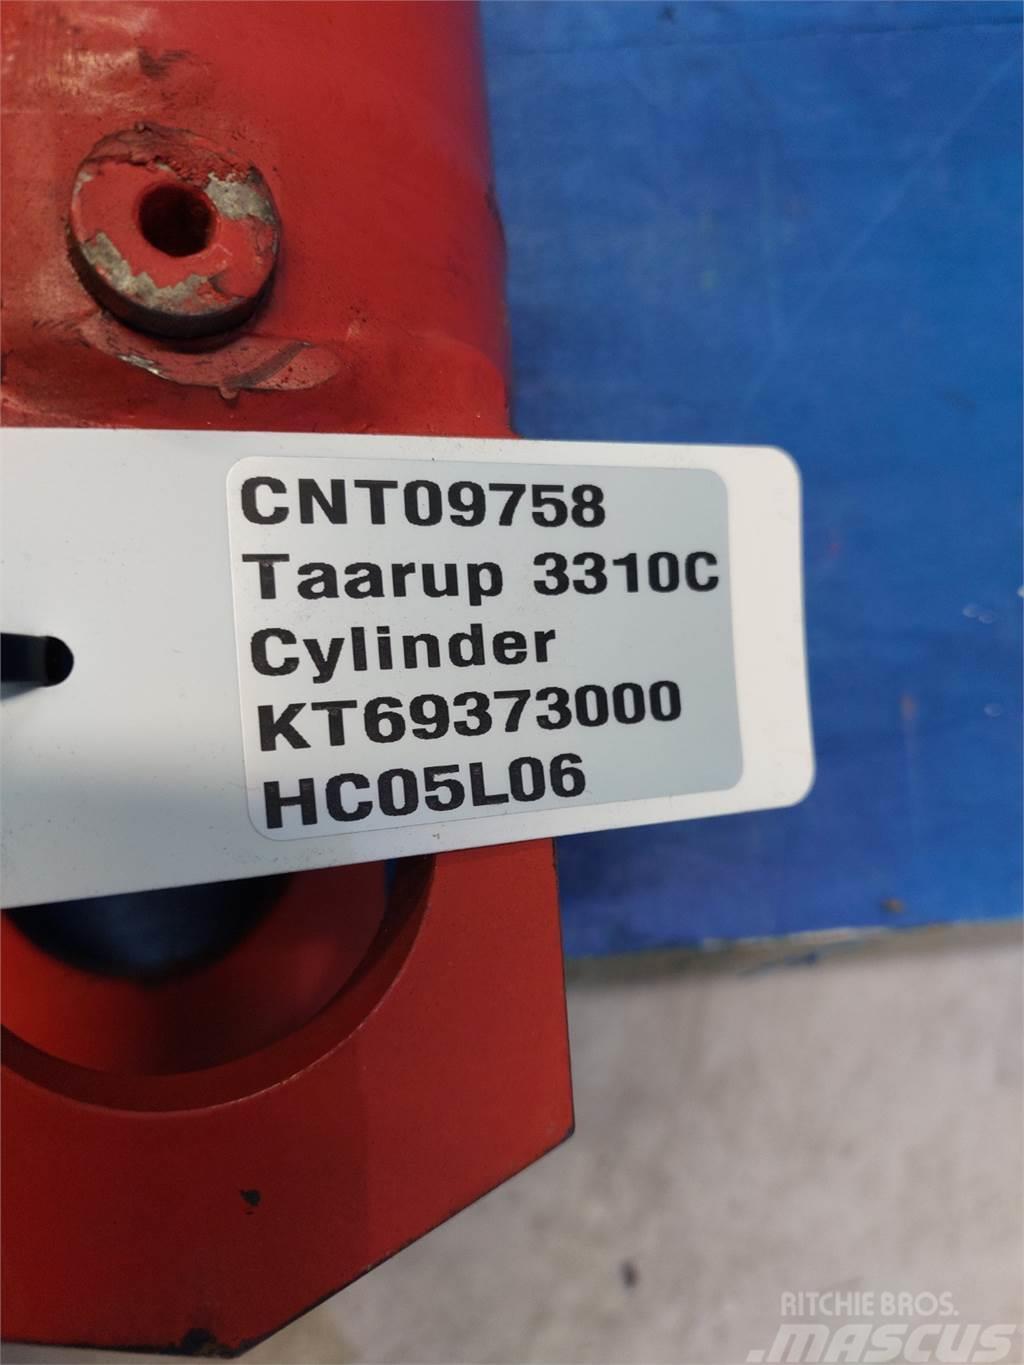 Taarup 3310C Cylinder KT 69373000 Slåttermaskiner